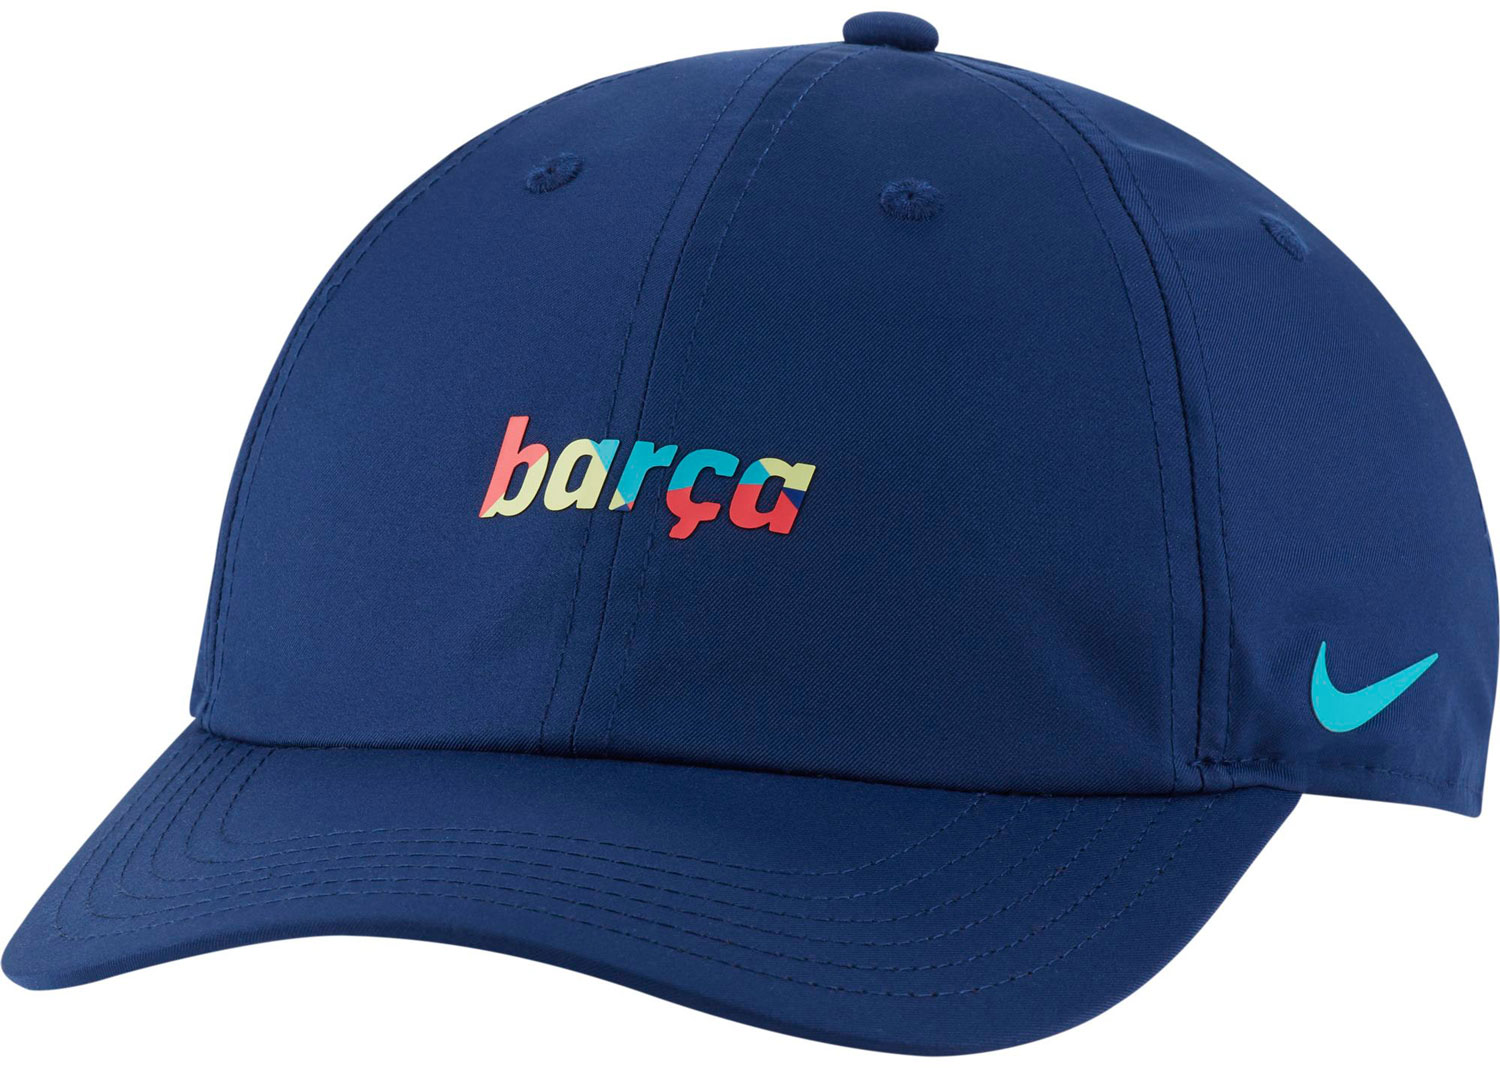 Boys’ baseball cap